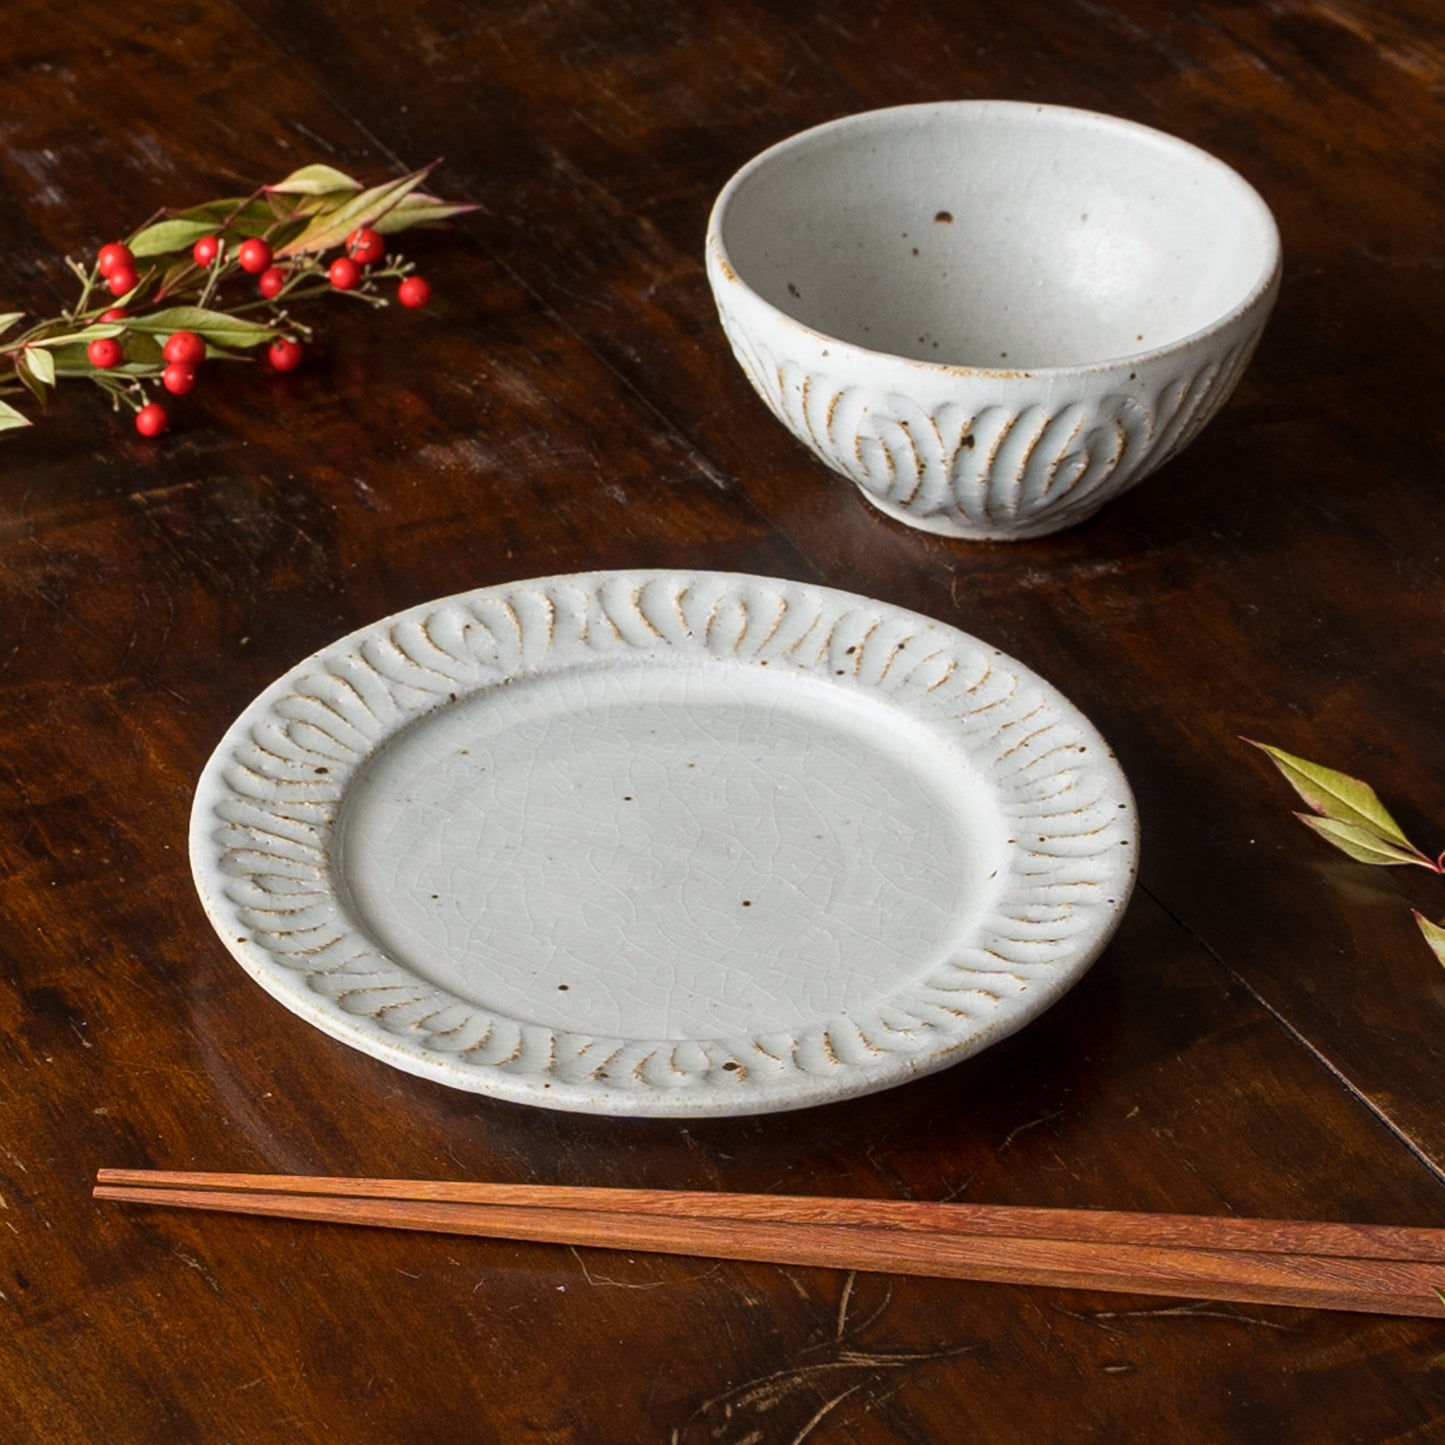 食卓が素敵に華やぐ伊藤豊さんの花紋のボウルとプレート